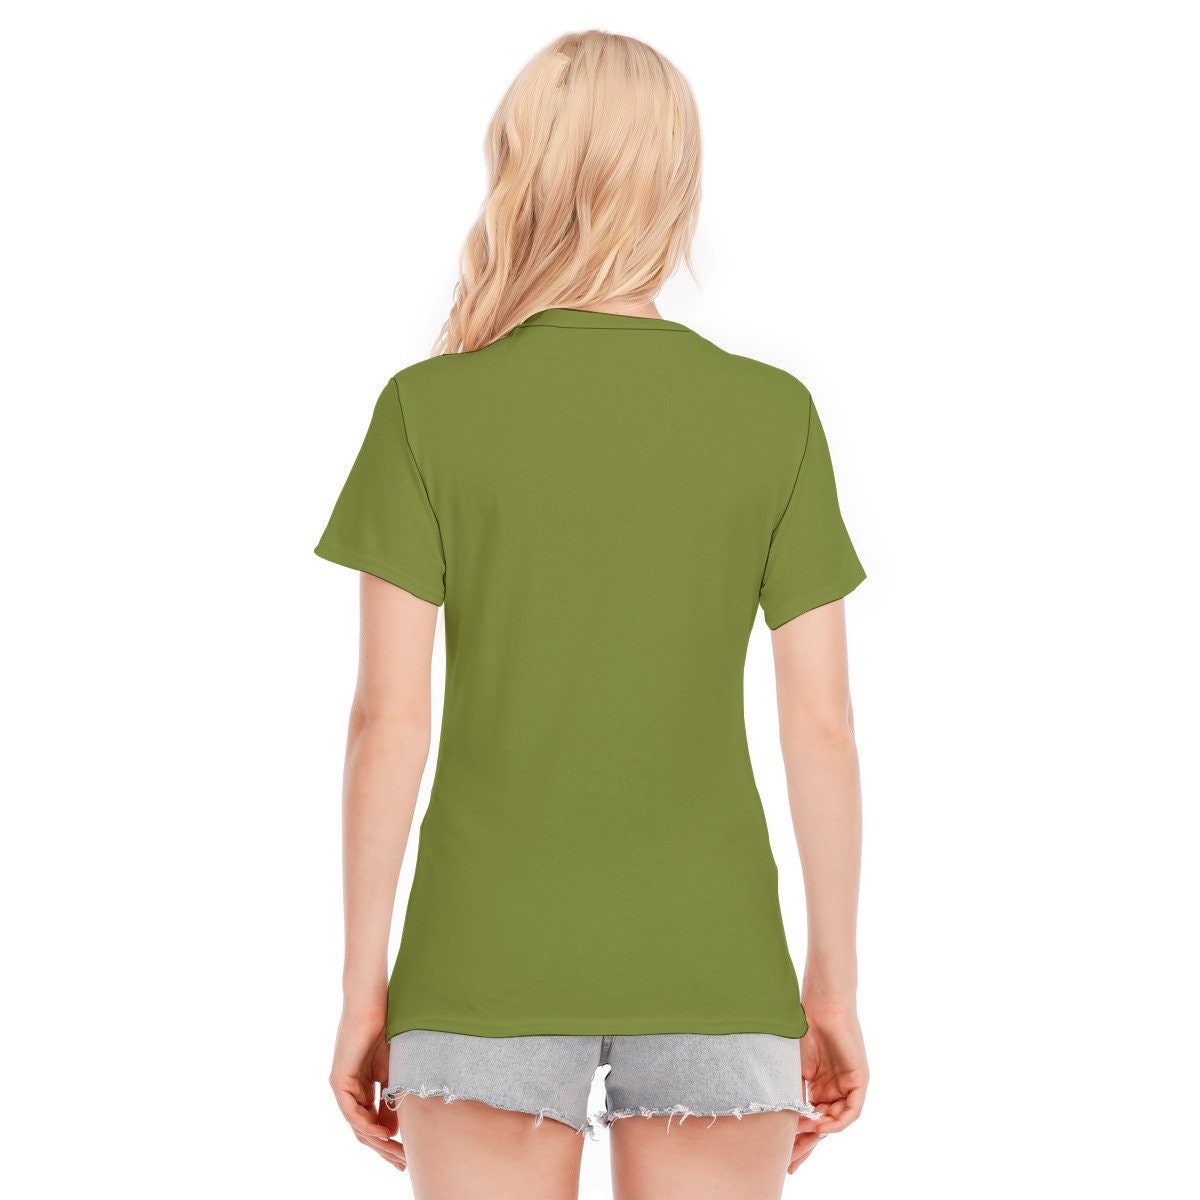 Retro T-shirt, Words Tshirts, Vintage Words Tshirt, Green Words T-shirt, Hippie Tshirt Women, Vintage Style Tshirt, Olive Green T-shirt